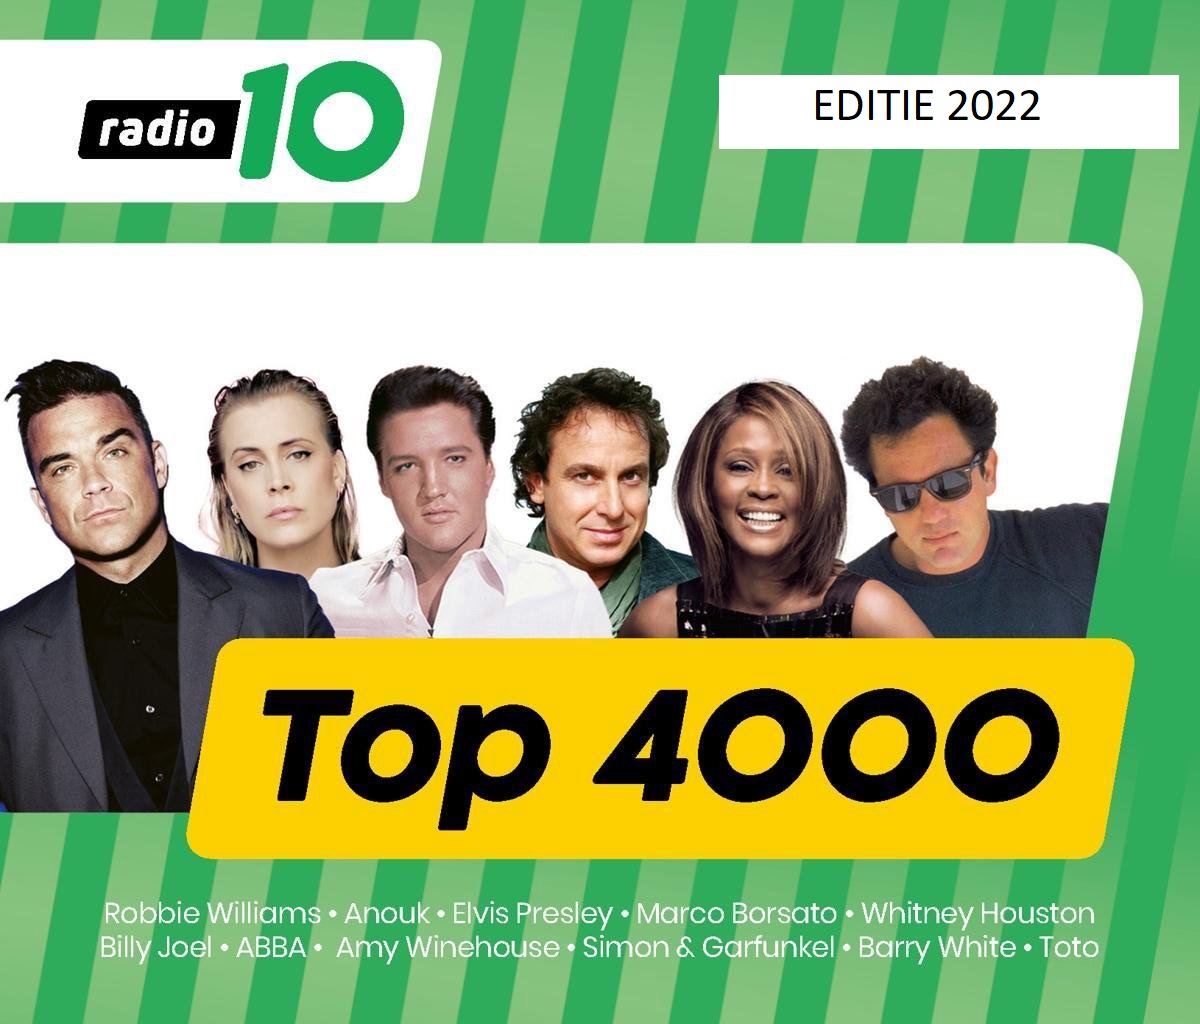 Radio 10 Top 4000 Editie 2022 3501-3600